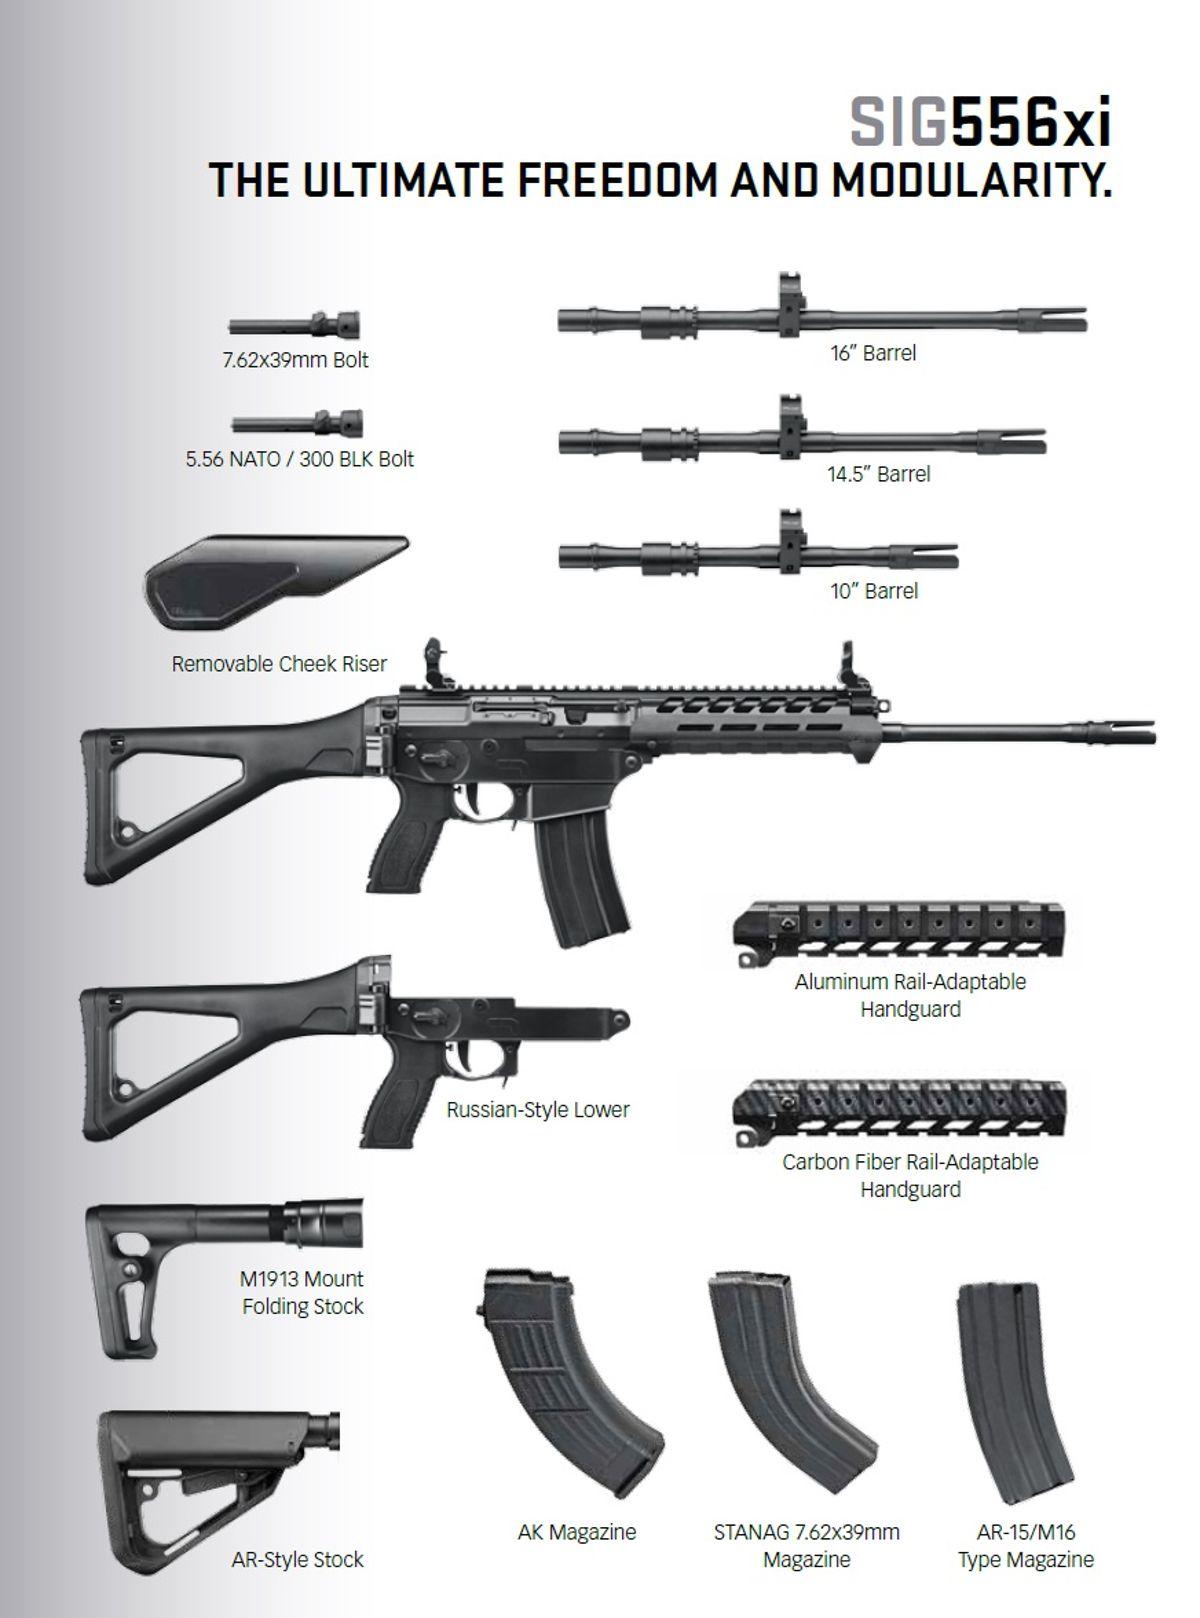 Было бы не плохо увидеть винтовки компании Sig 550 с модификацтями и соврем...